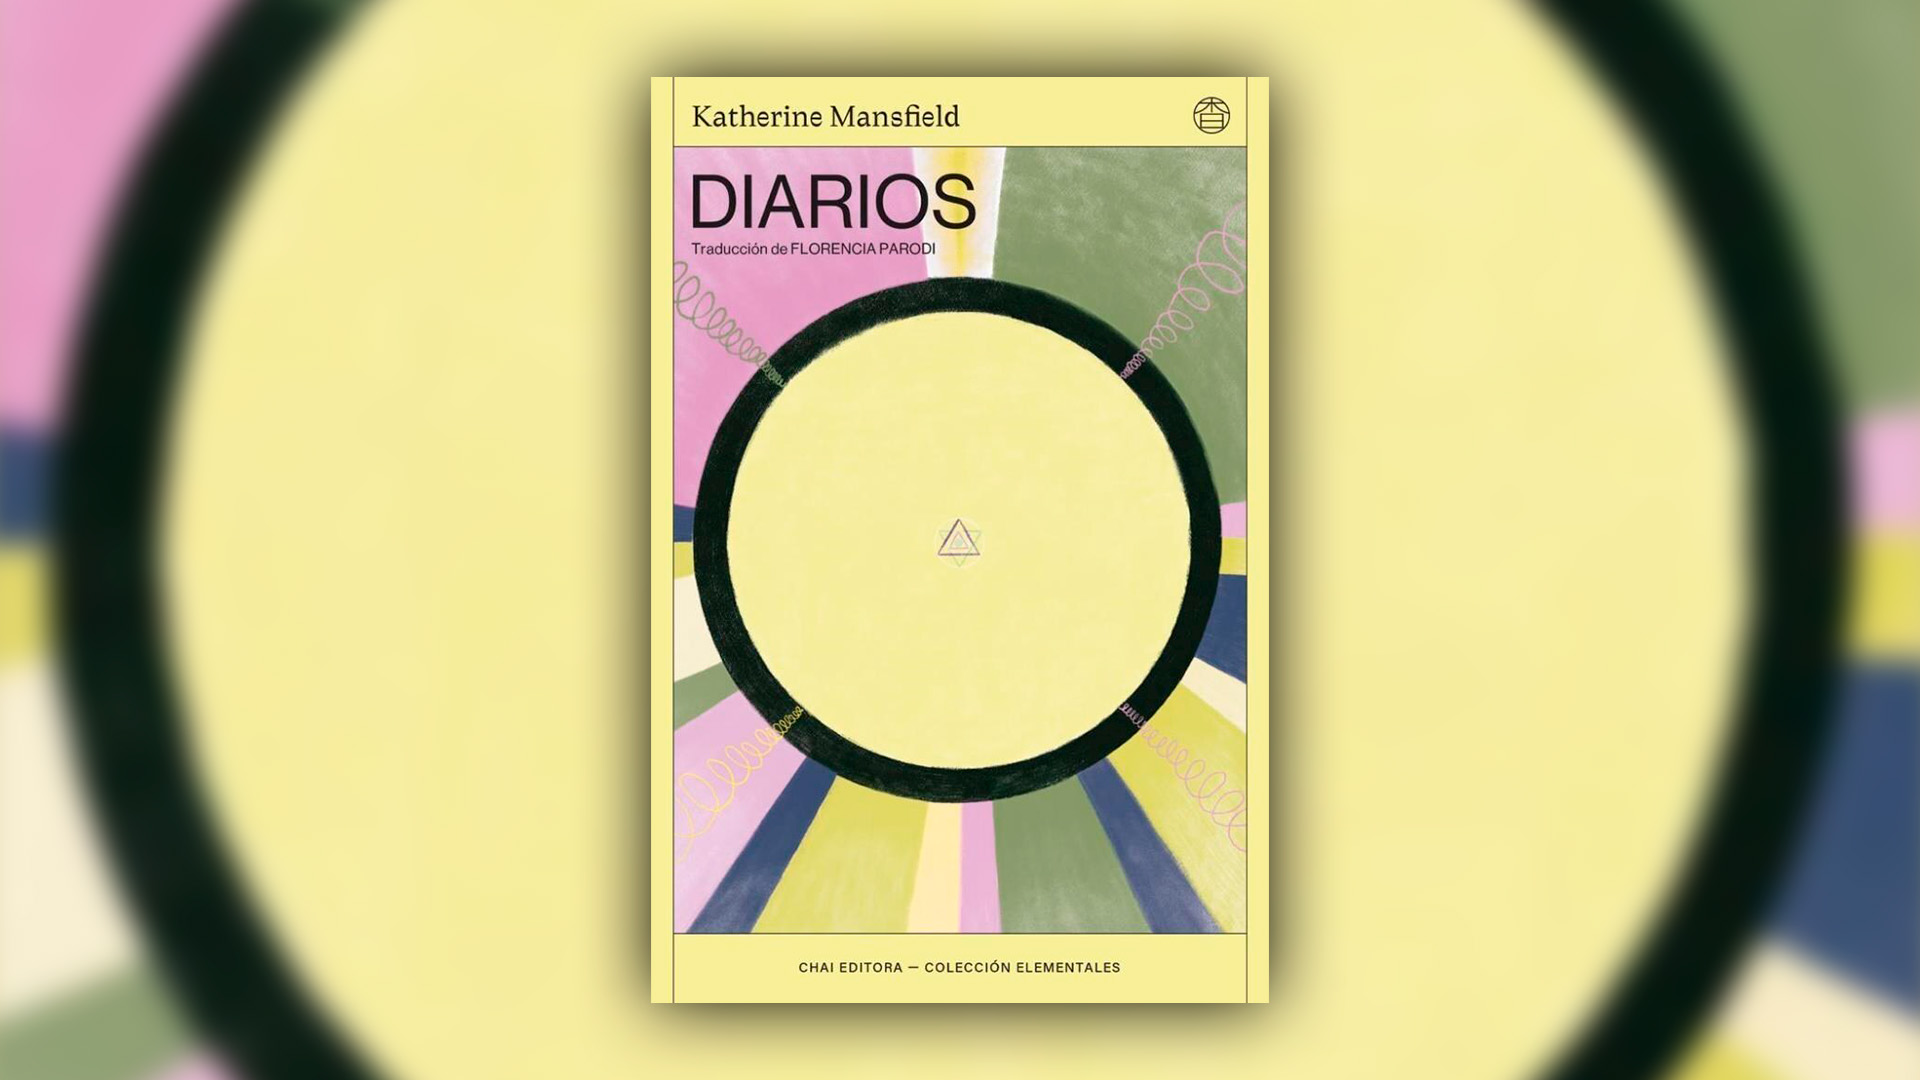 Los "Diarios", en una traducción de Florencia Parodi.